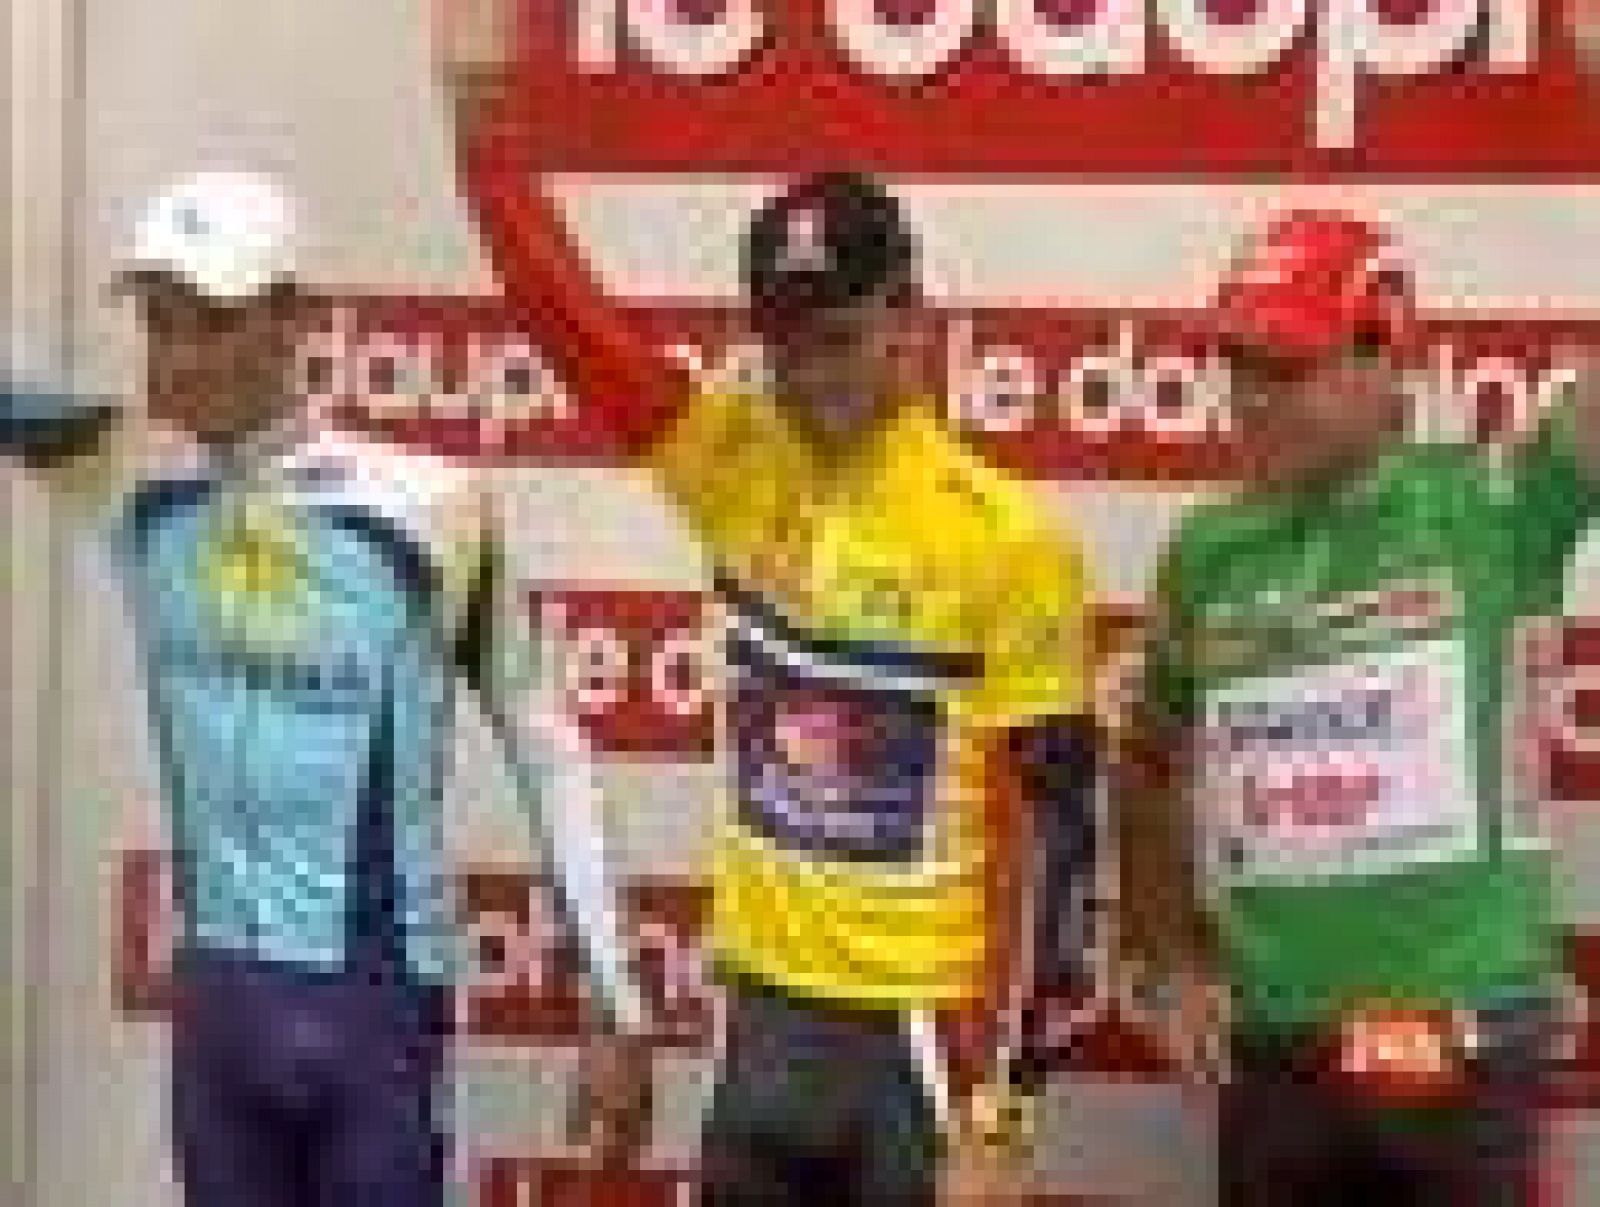 Después de ganar la Volta a Catalunya, Alejandro Valvede culminó su triunfo en la Dauphine Libere, el segundo consecutivo auque este año con sabor agridulce.